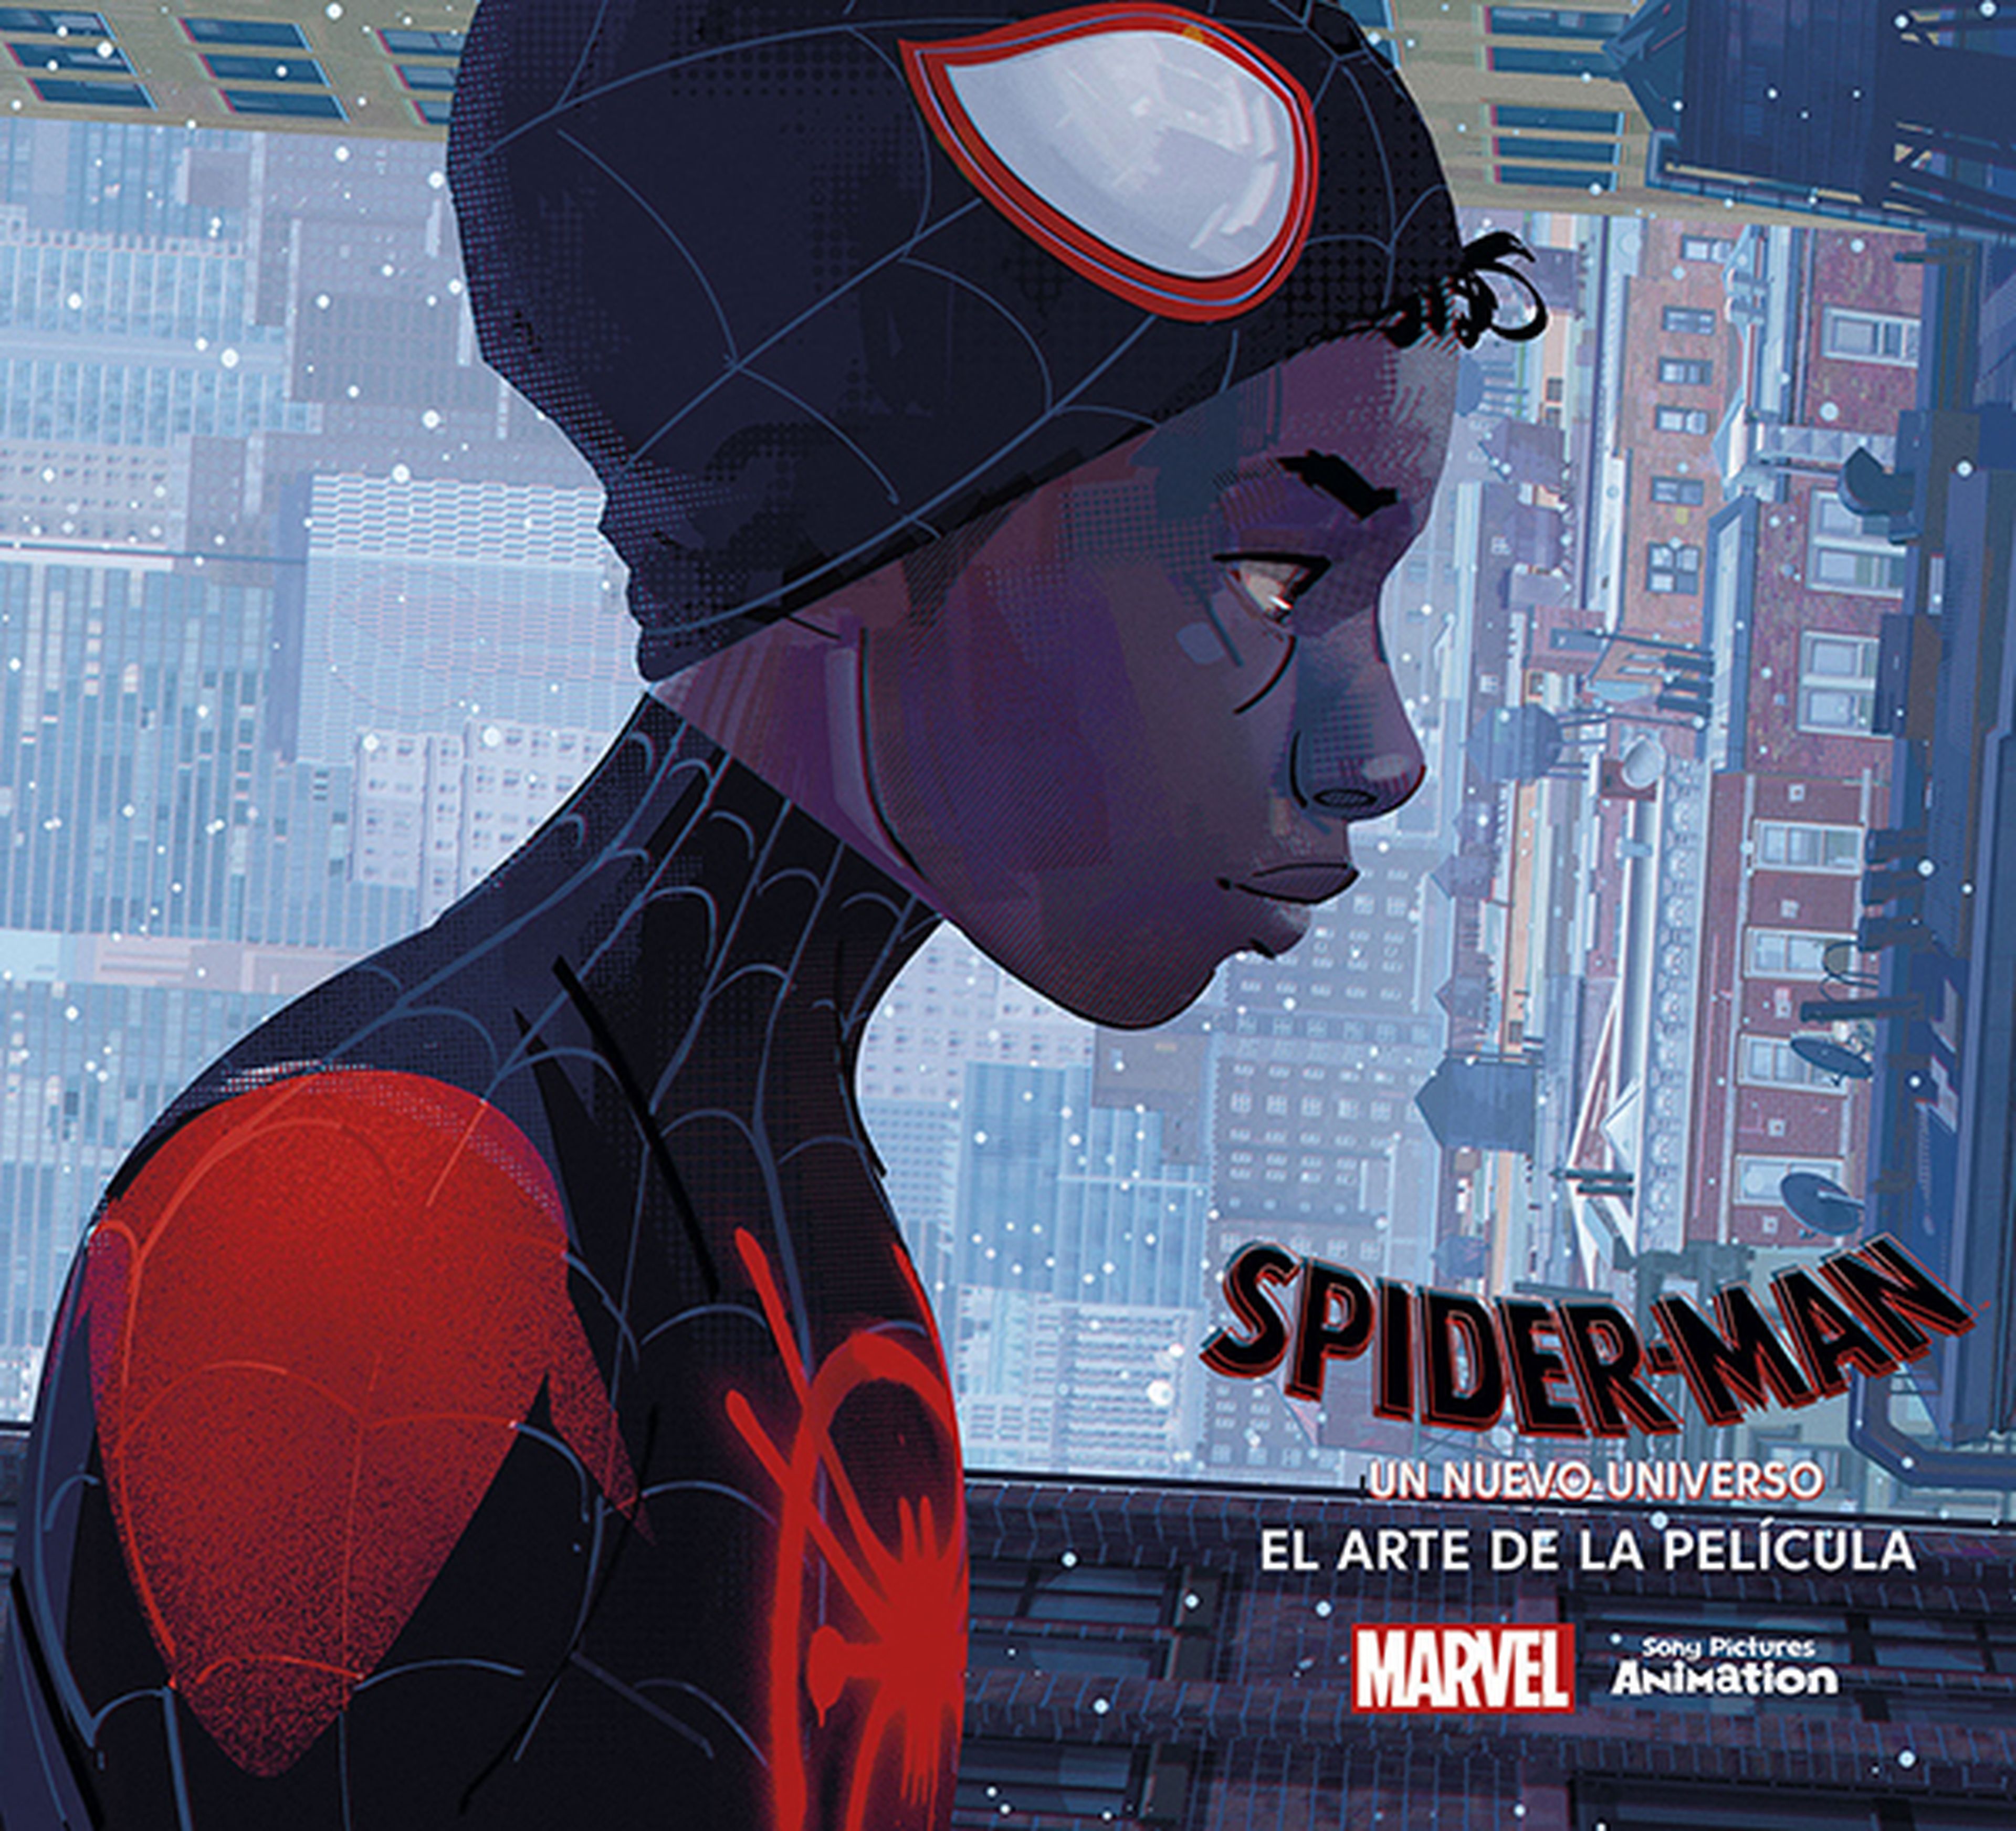 Spider-Man un nuevo universo - Libro de Arte